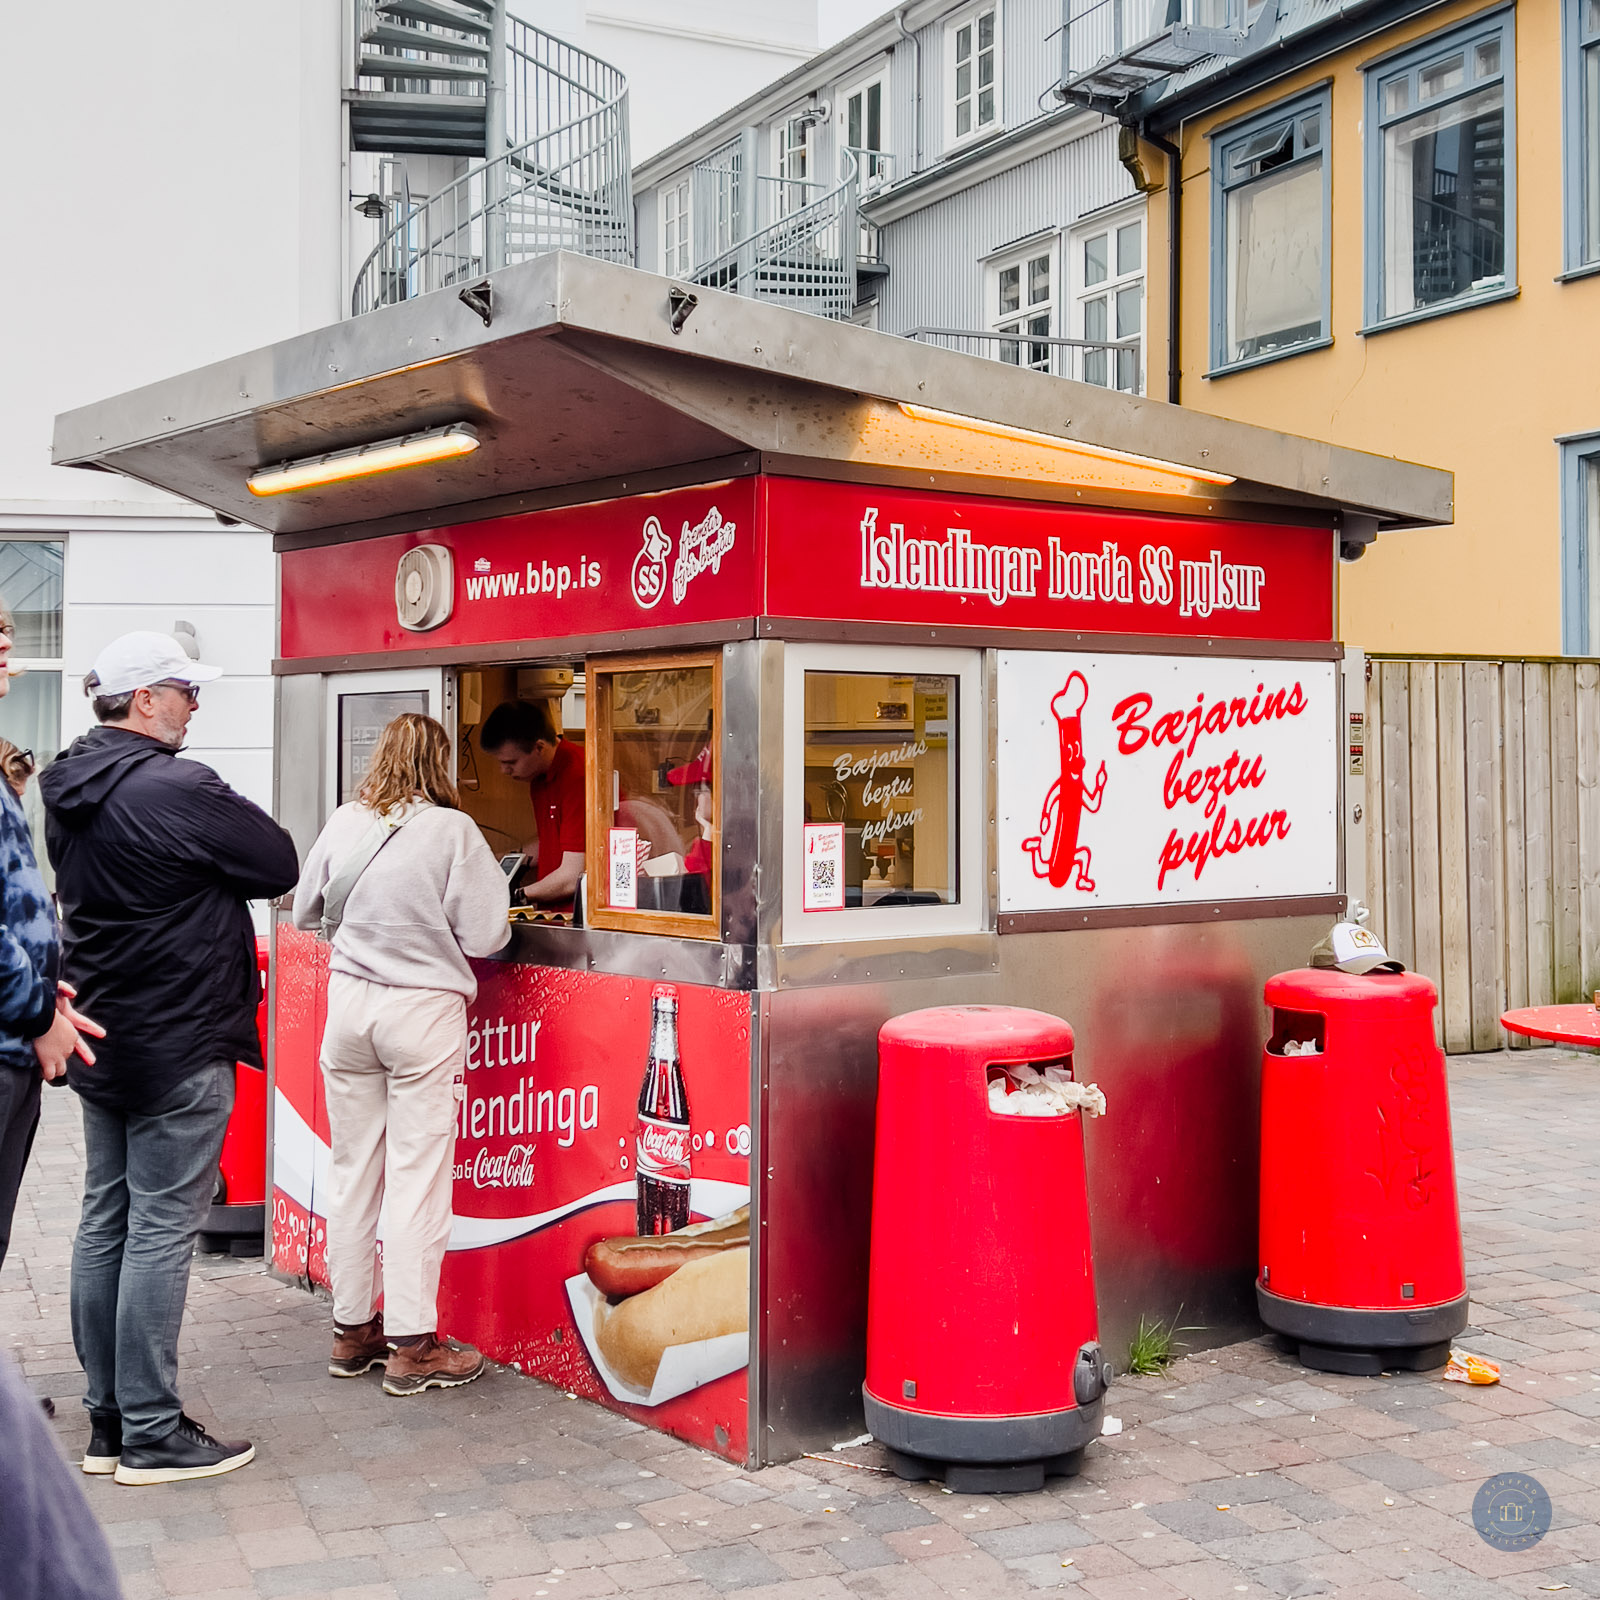 hot dog stand in reykjavik